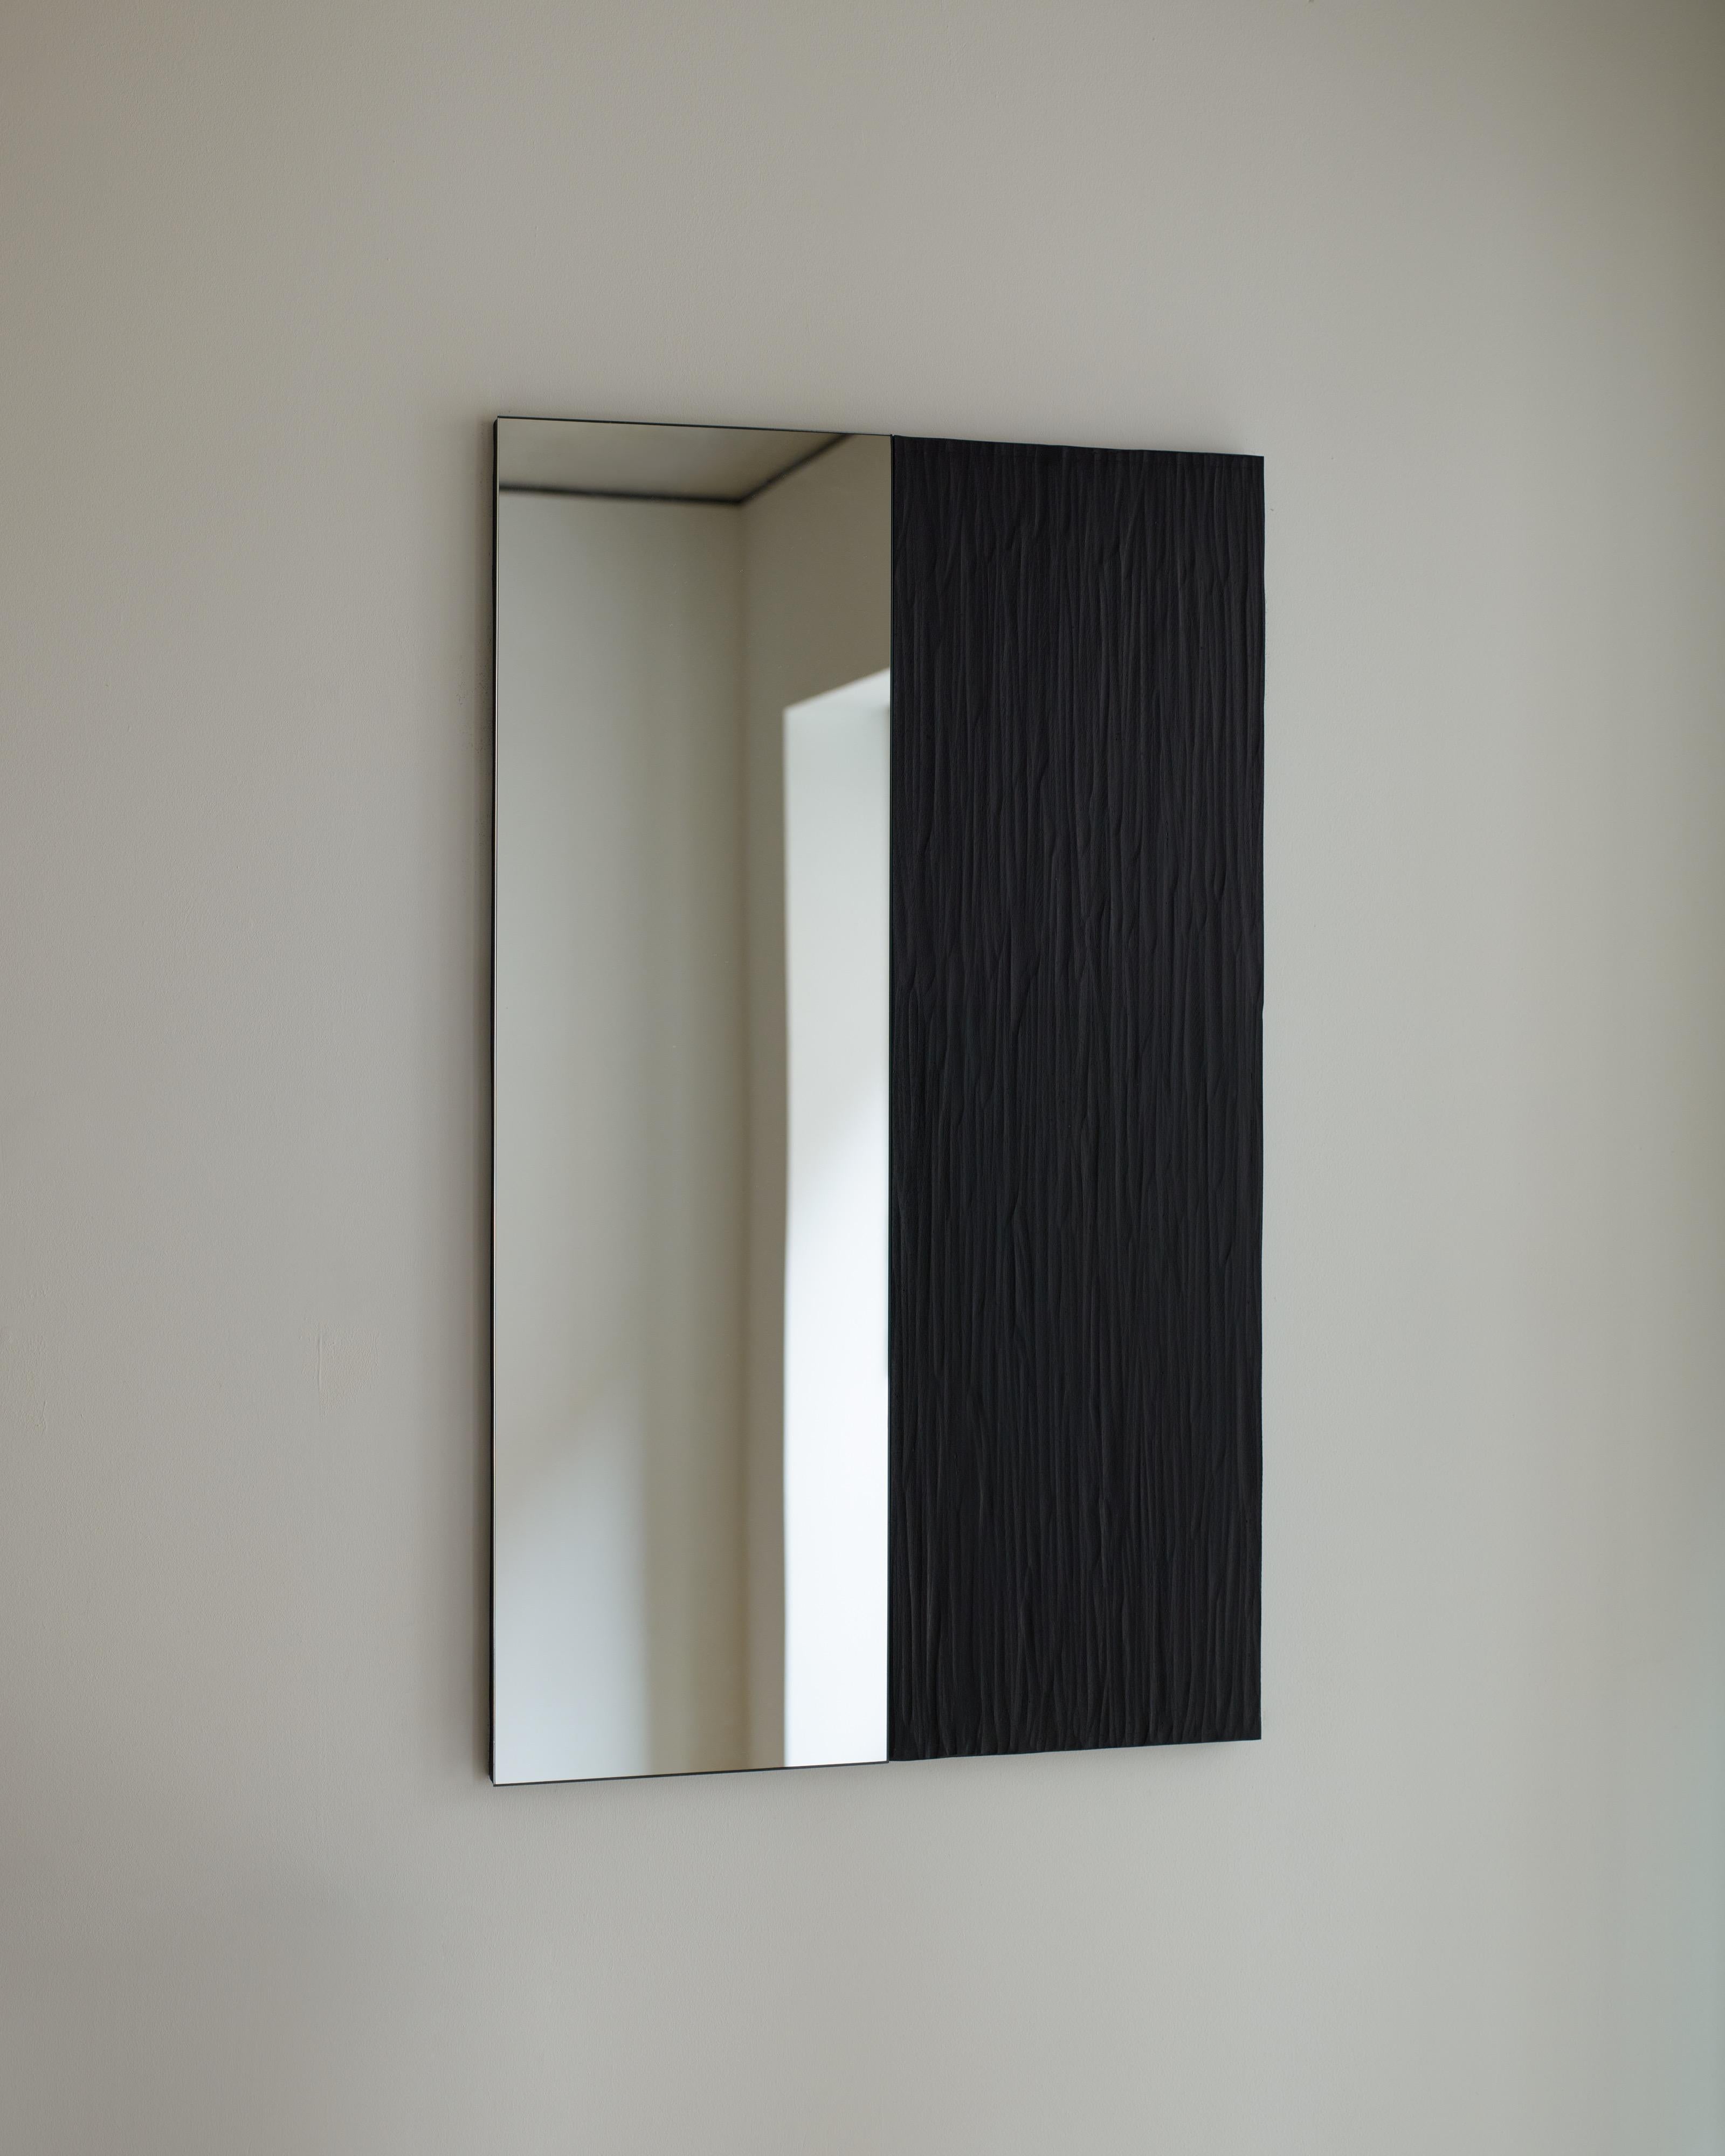 'Talisman mirror No. 4' de Rooms Studio est un miroir mural à un seul pan avec un panneau latéral en chêne noirci et sculpté à la main. Cette œuvre fait partie d'une série en édition limitée intitulée Talisman Mirrors, dont les formes empruntent